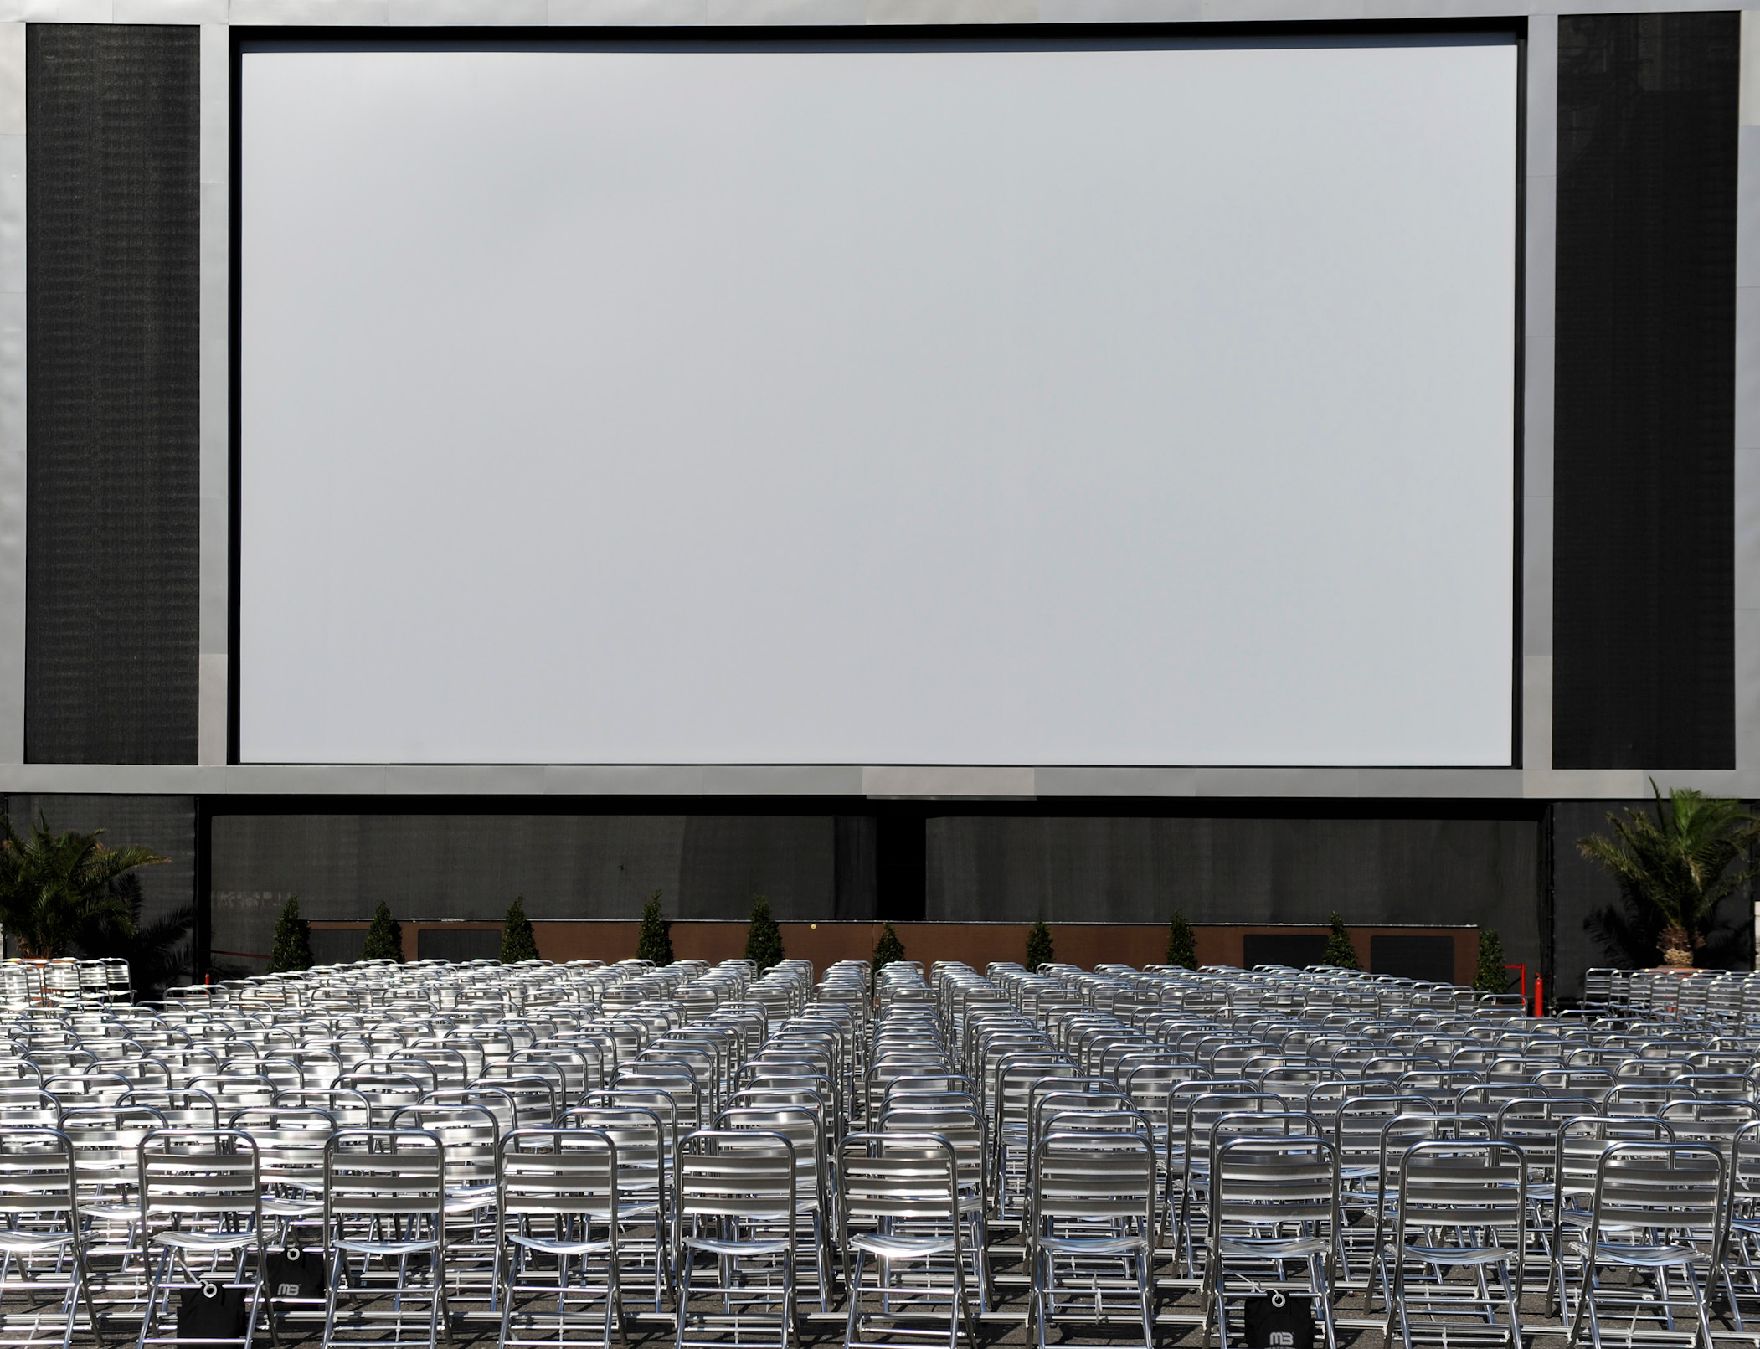 Leere Aluminiumsesselreihen vor einer großen Leinland beim Filmfestivals am Rathausplatz. Schlagworte: Kultur, Kunst, Musik, Sessel, Stuhl, Stühle